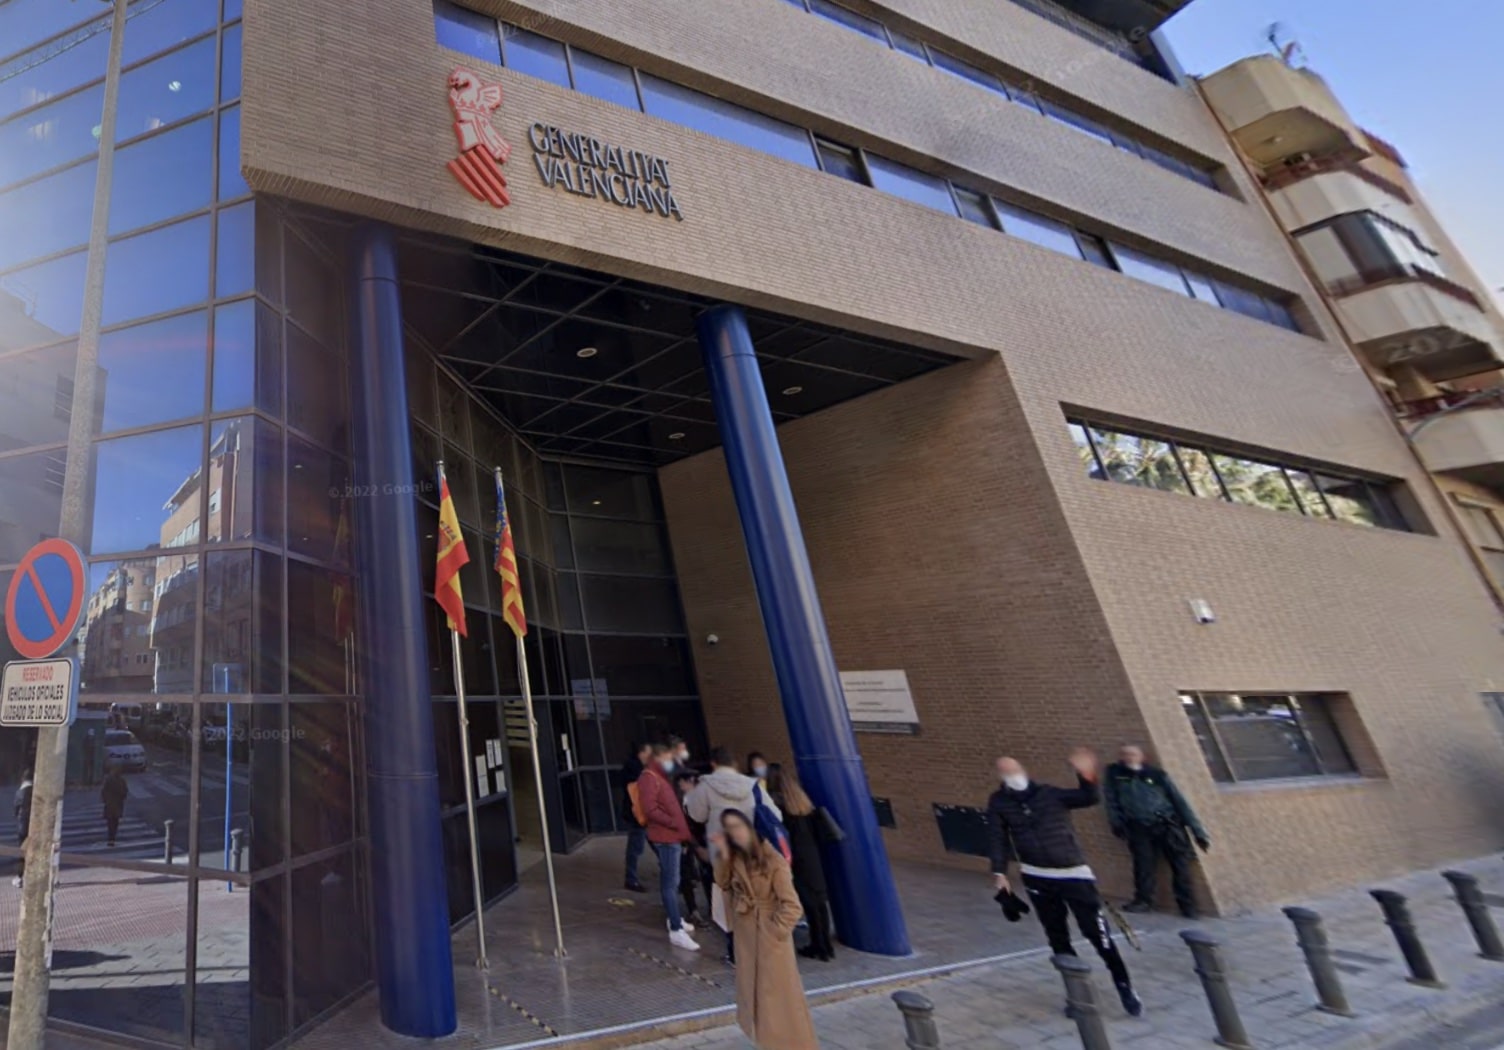 Justicia adquiere por 1,4 millones los locales donde se ubicarán los Juzgados de Marca de la Unión Europea en Alicante